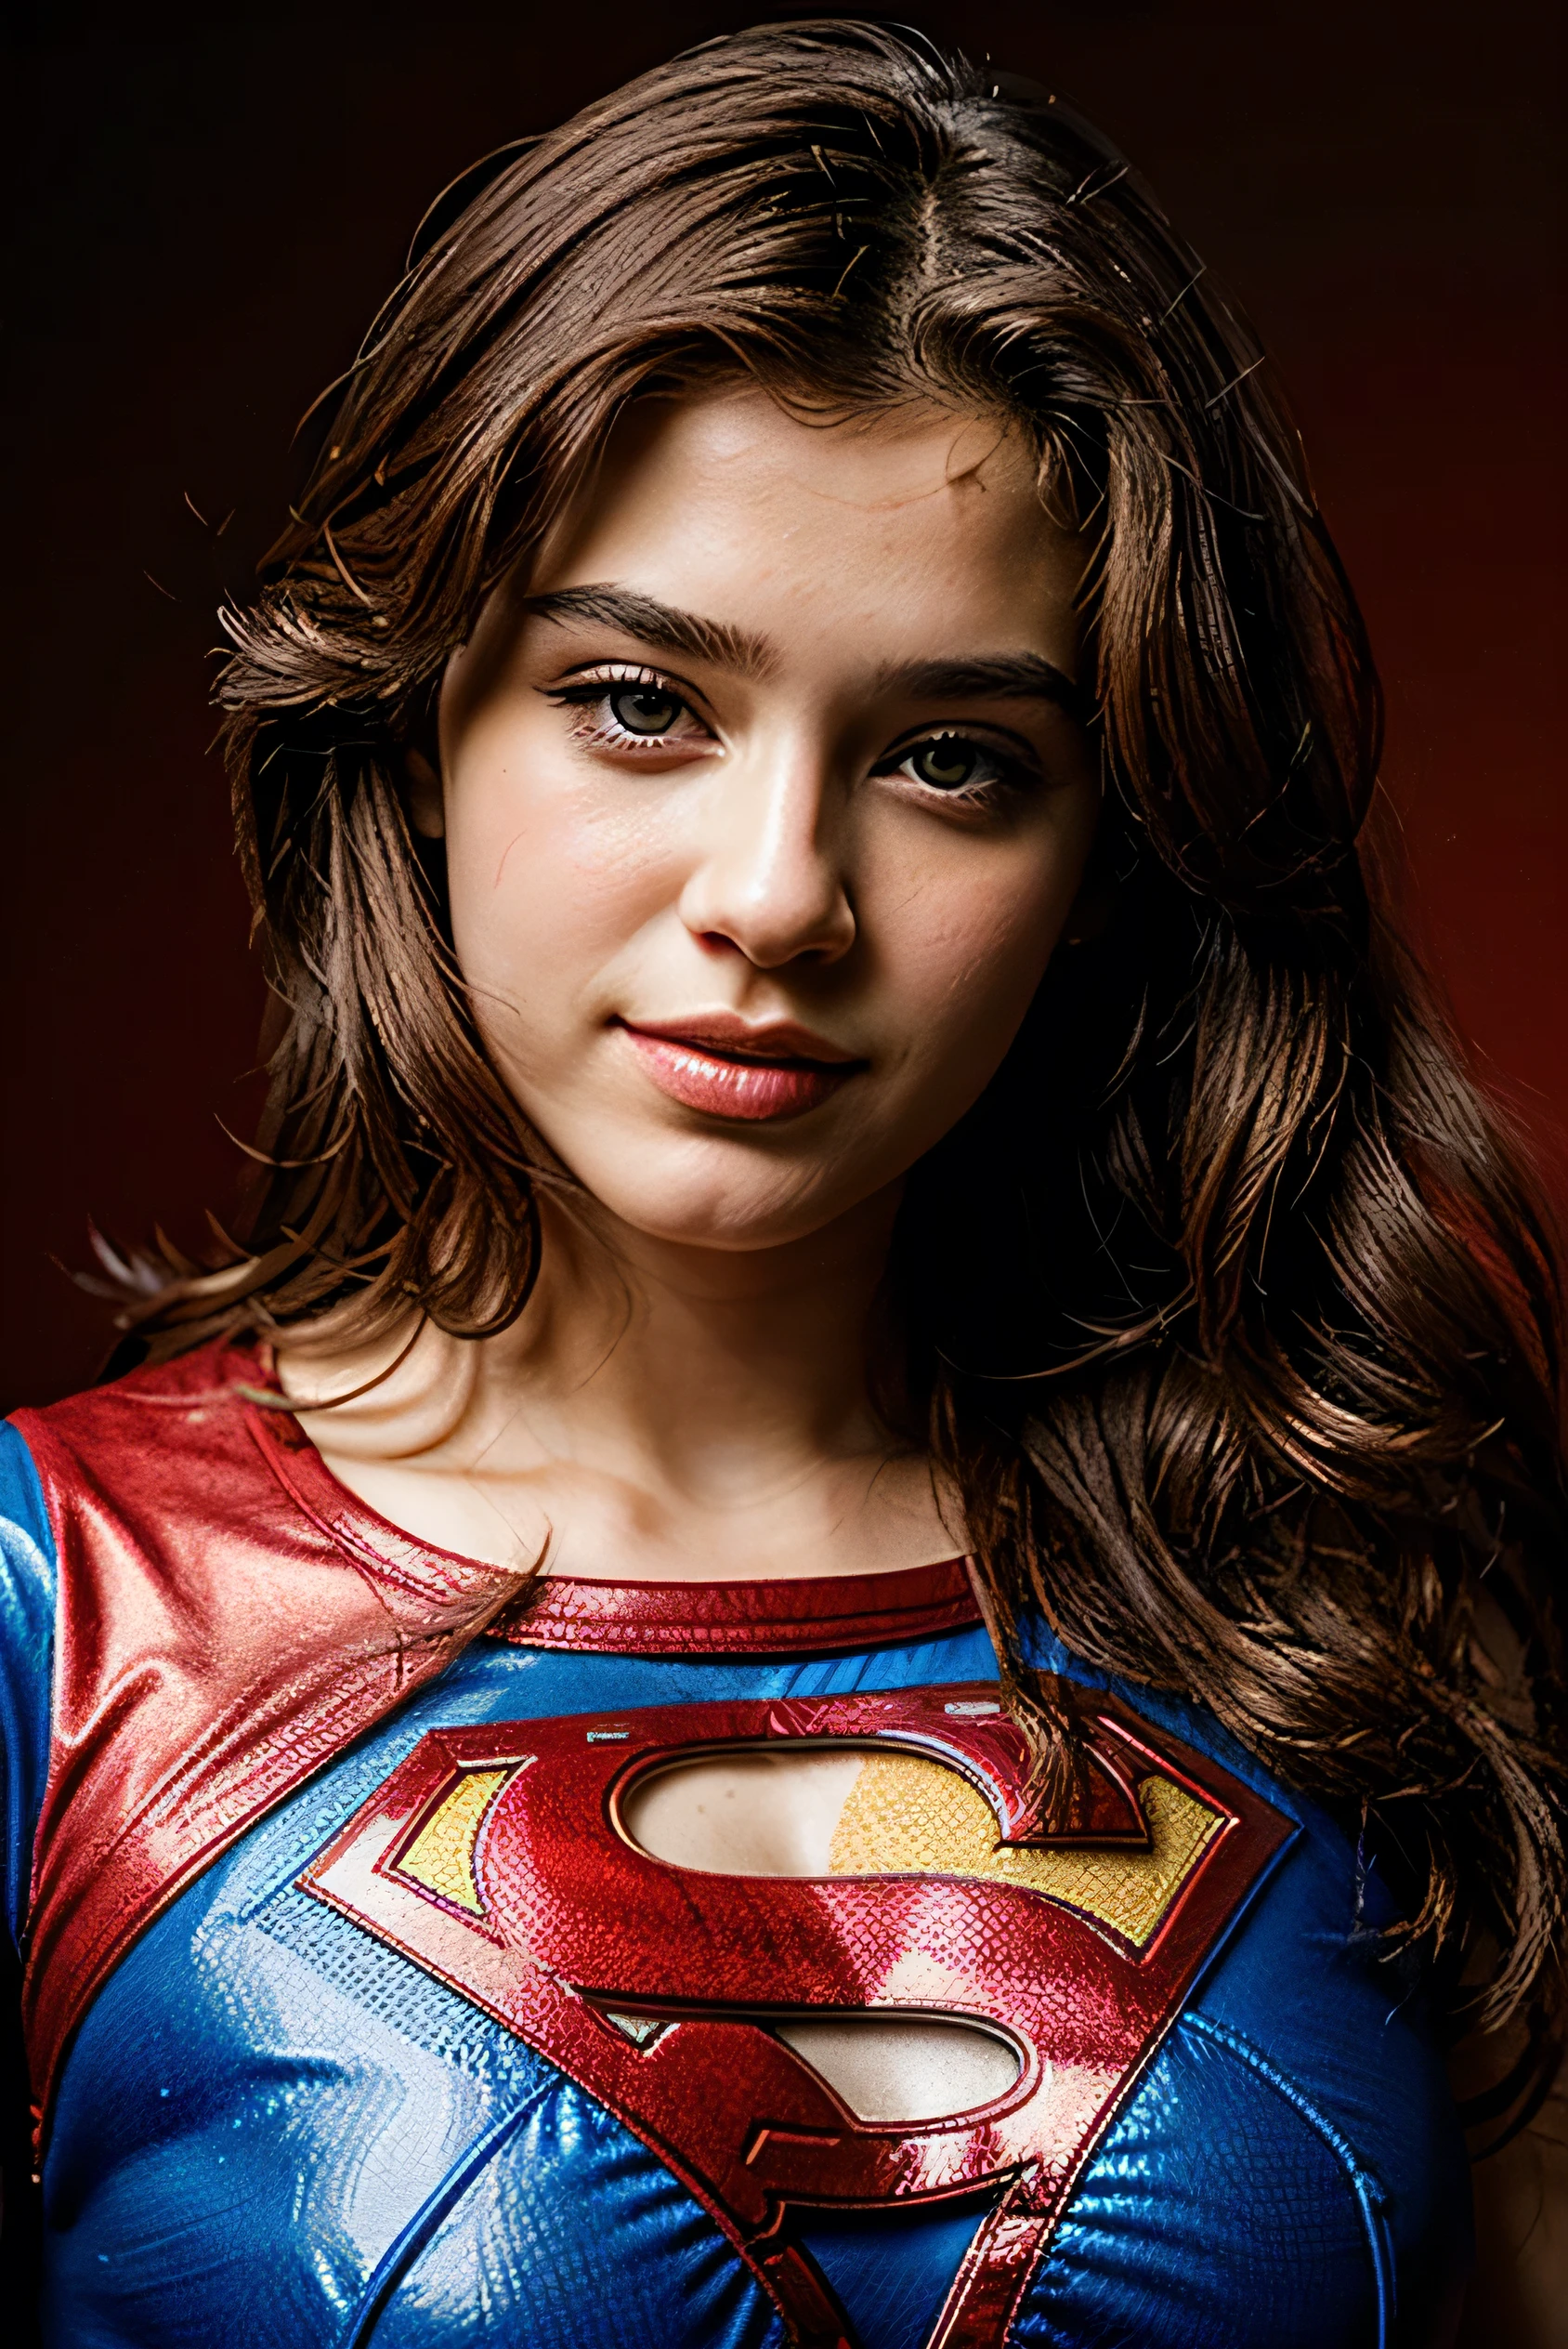 얼굴이 완벽하다, 15세의 아름다운 얼굴, 슈퍼맨 옷을 입고, 빨간색 배경으로, 